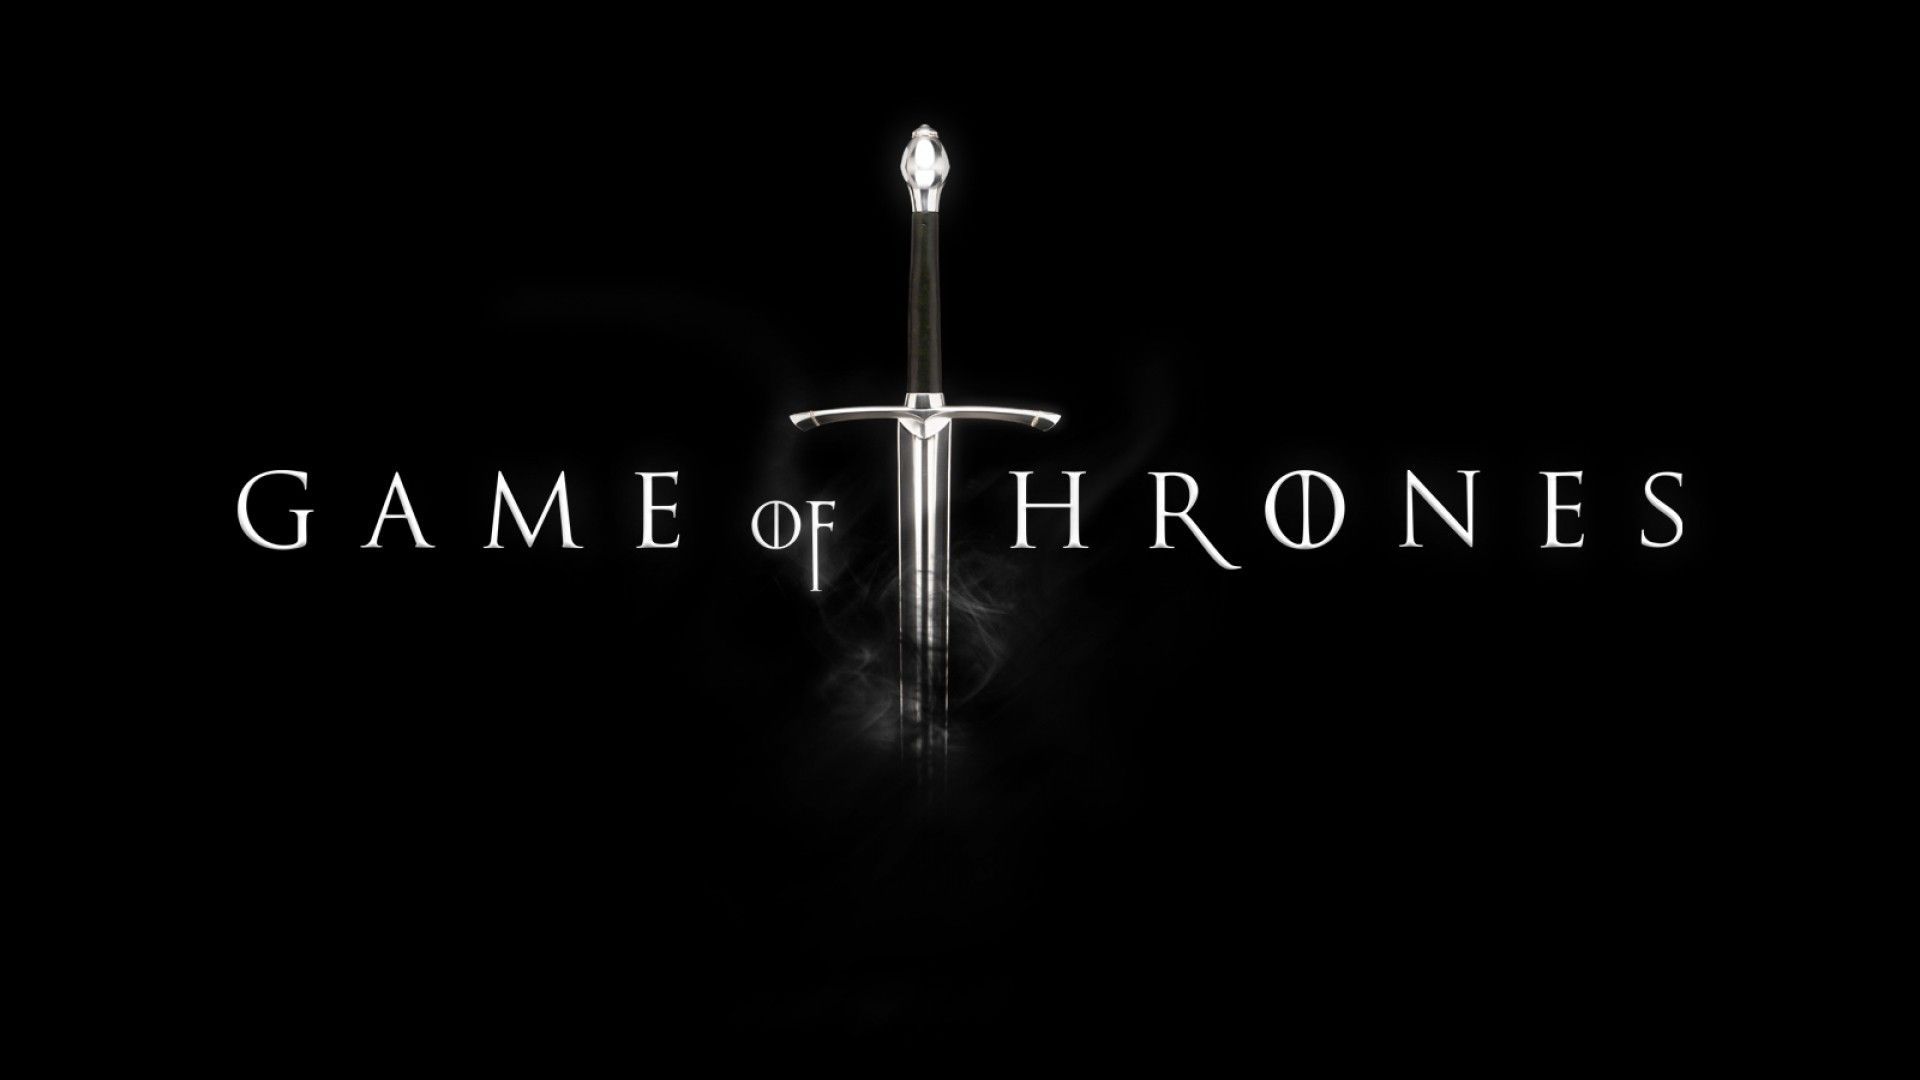 Le Palmarès complet des Emmy Awards 2015 : Game of Thrones à l'honneur #2